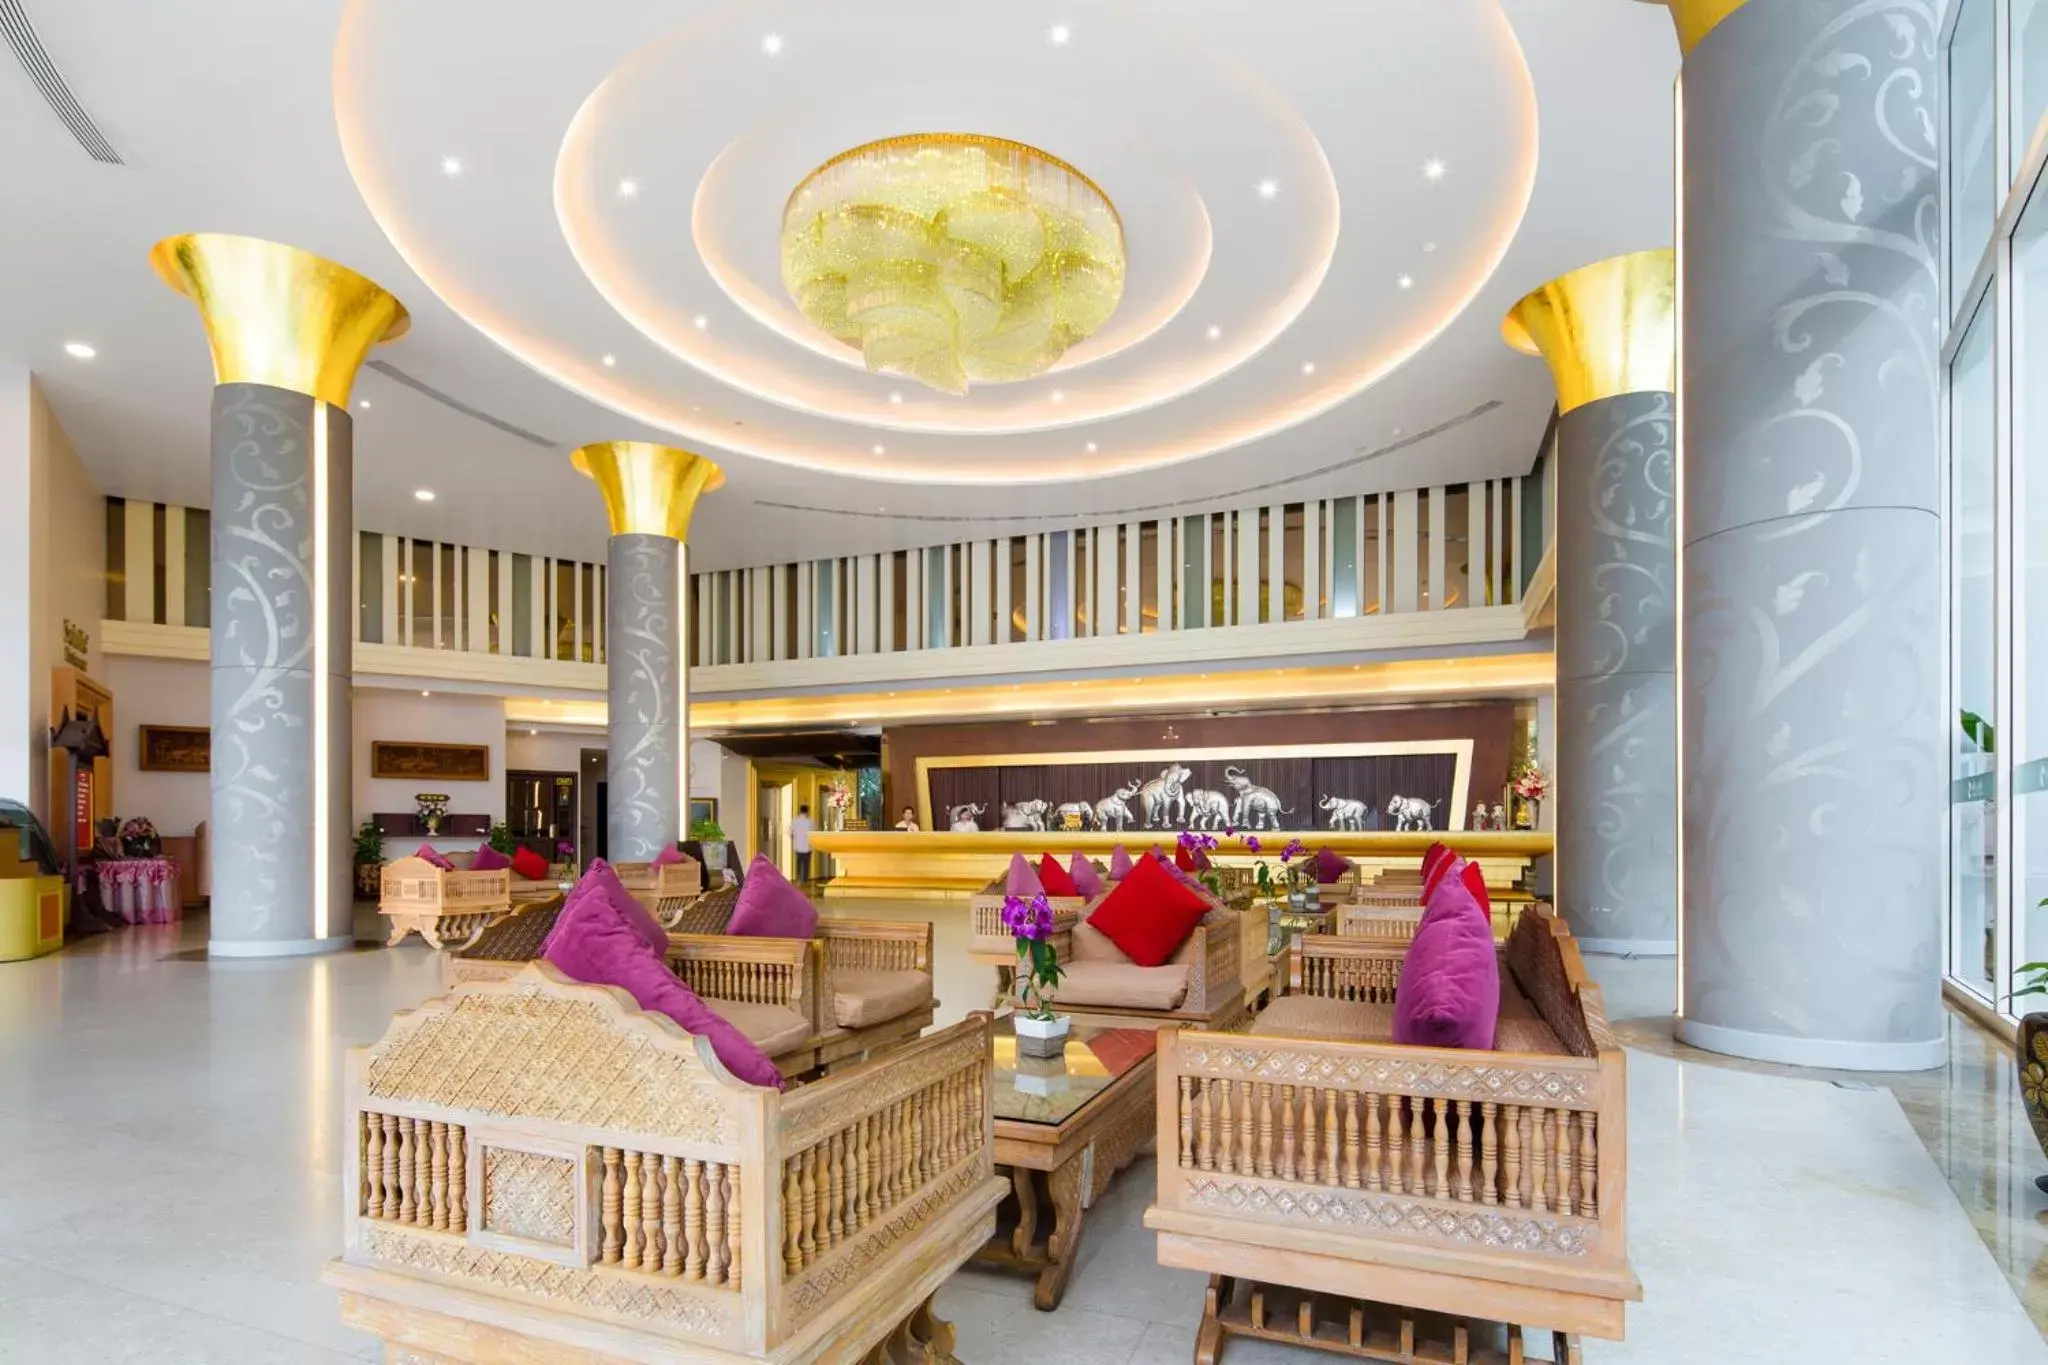 Lobby or reception in Aiyara Grand Hotel